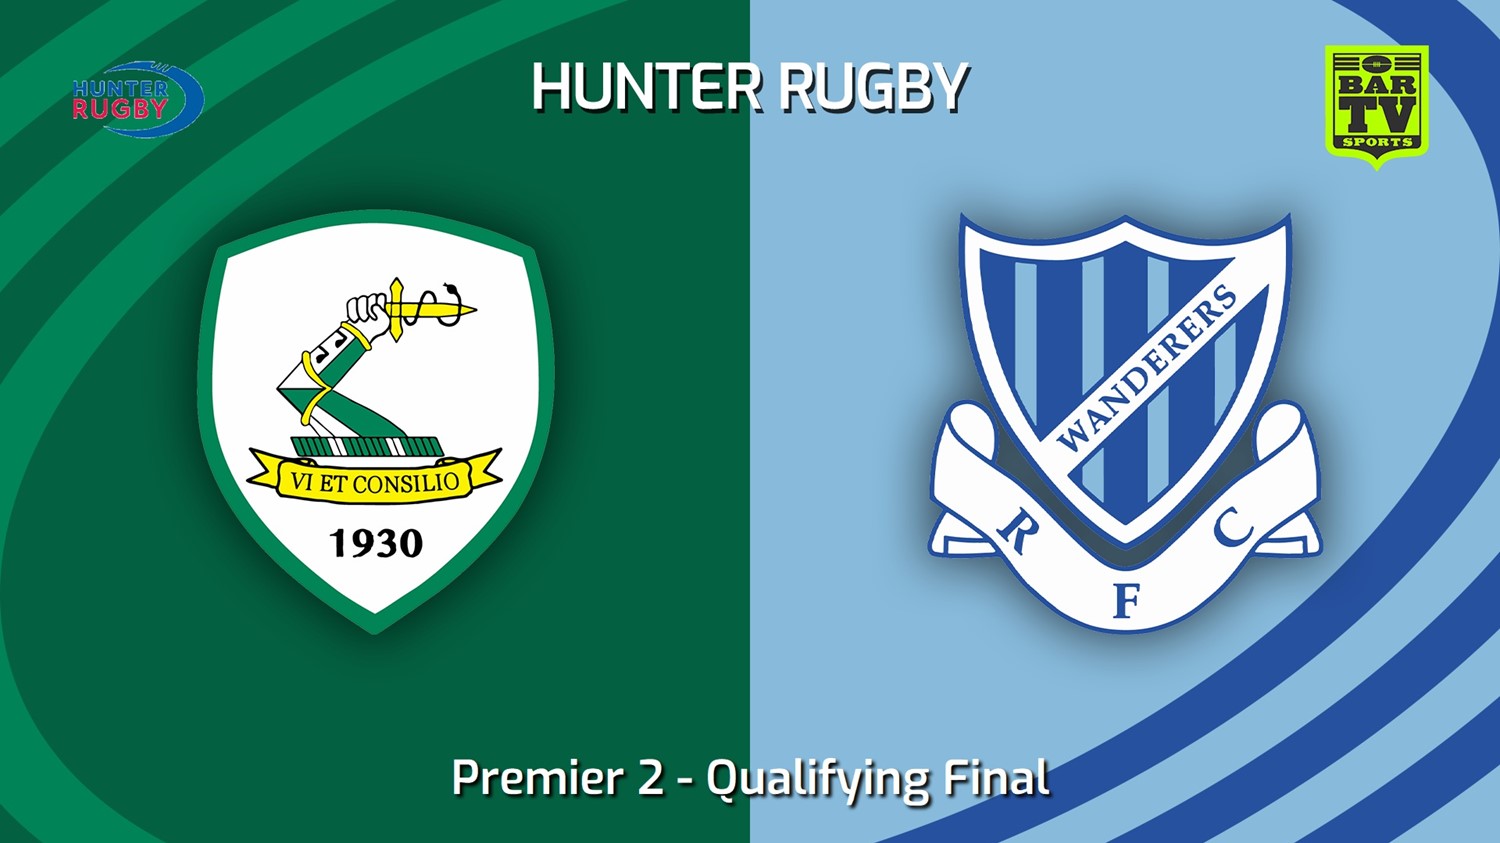 230812-Hunter Rugby Qualifying Final - Premier 2 - Merewether Carlton v Wanderers Slate Image